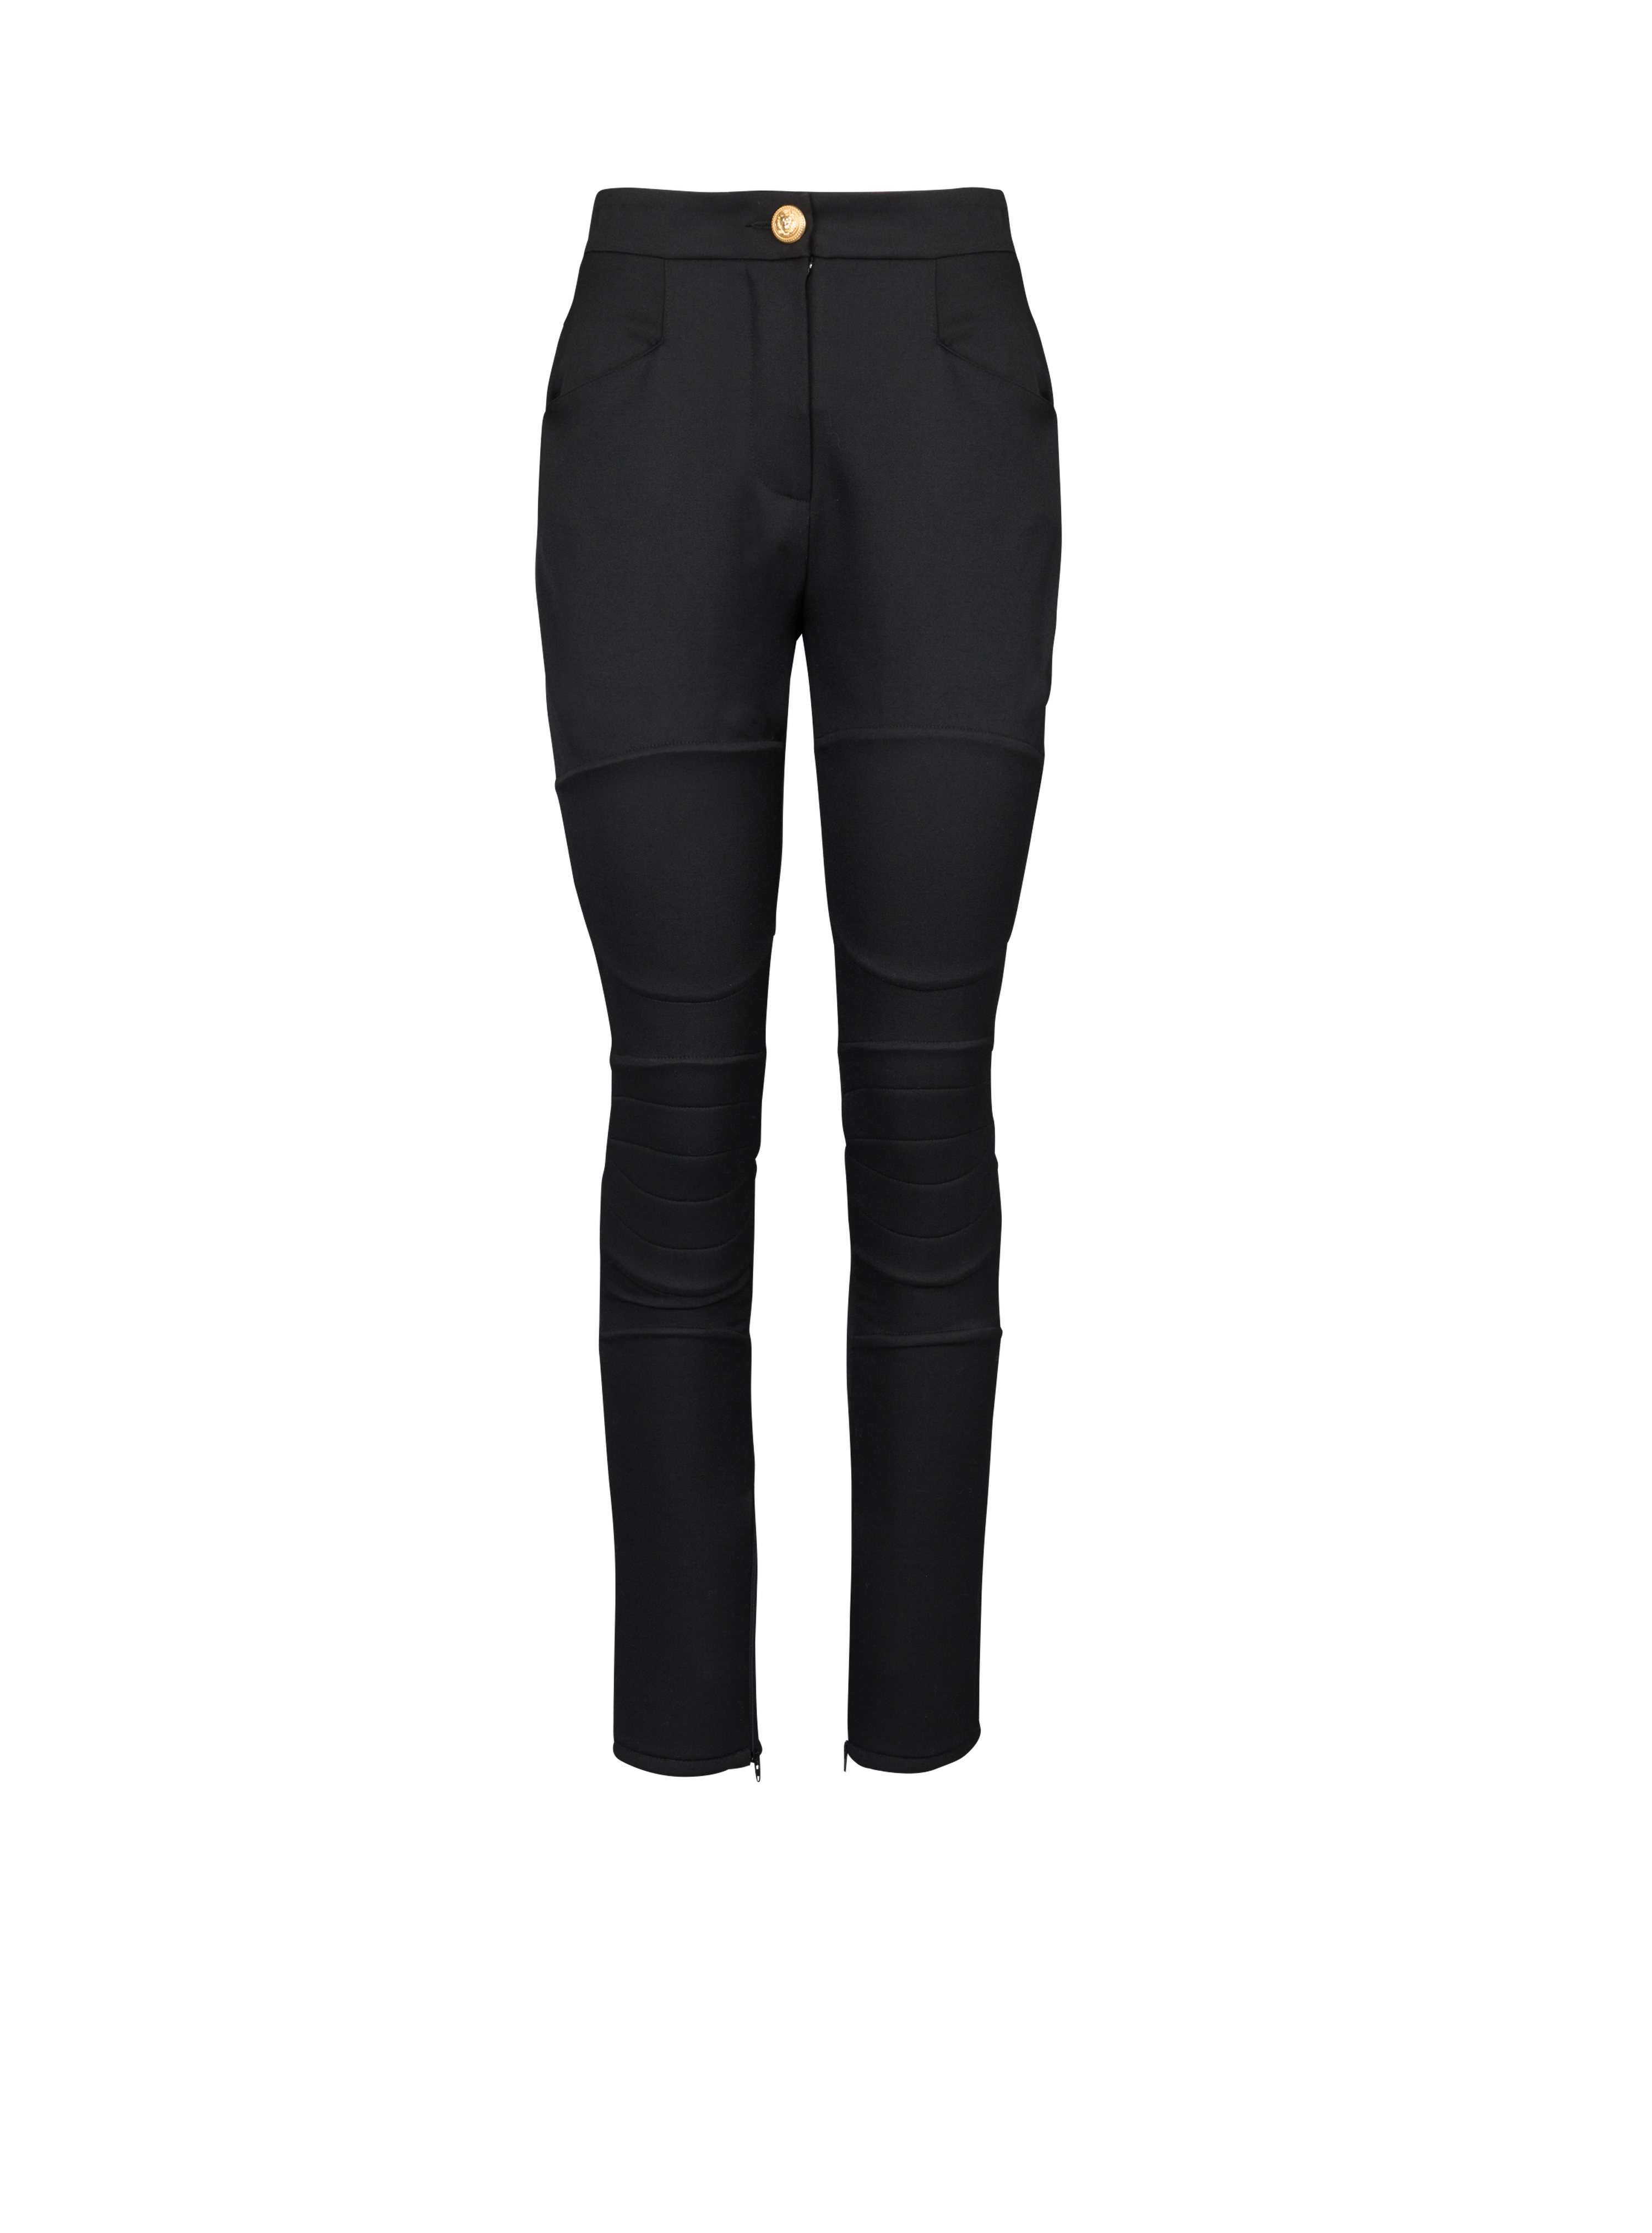 Wool skinny-fit trousers, black